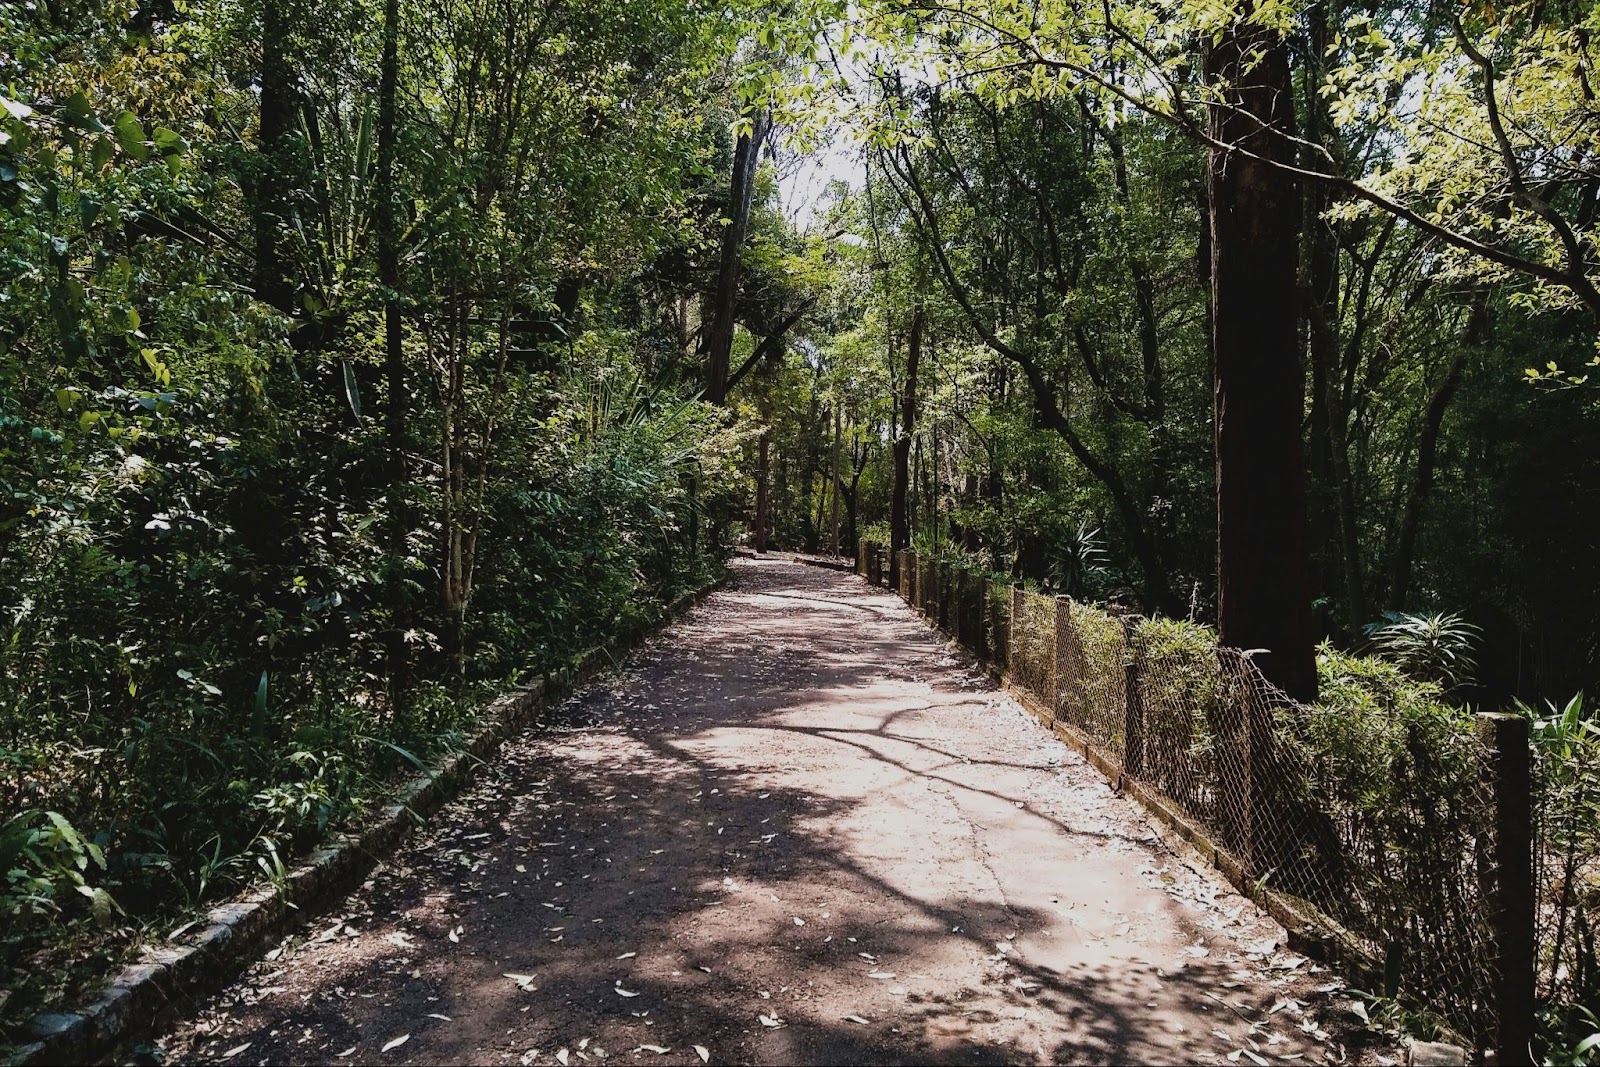 Trilha pavimentada do Parque Ecológico de são Carlos, cercada por diversas árvores de diferentes espécies.